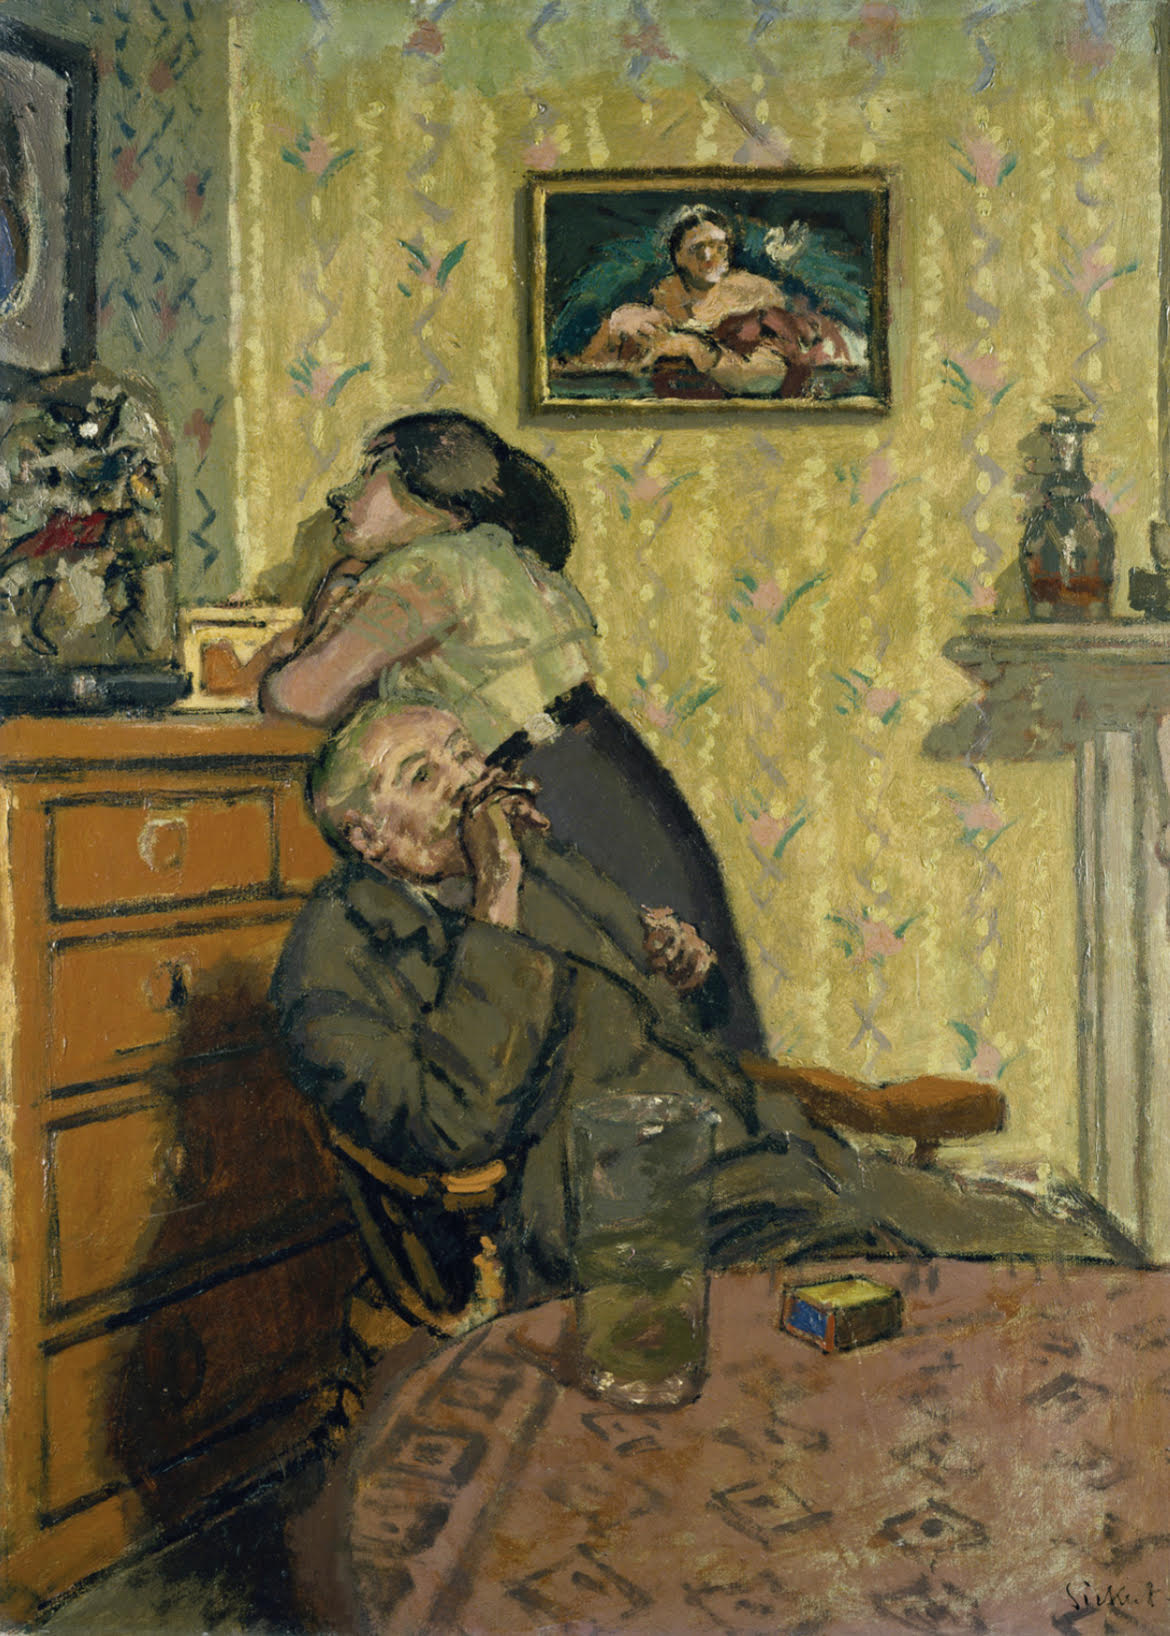 无聊 (Ennui) by 沃尔特 西克特 - c.1914 - 152,4 x 112,4 cm 阿什莫林博物馆